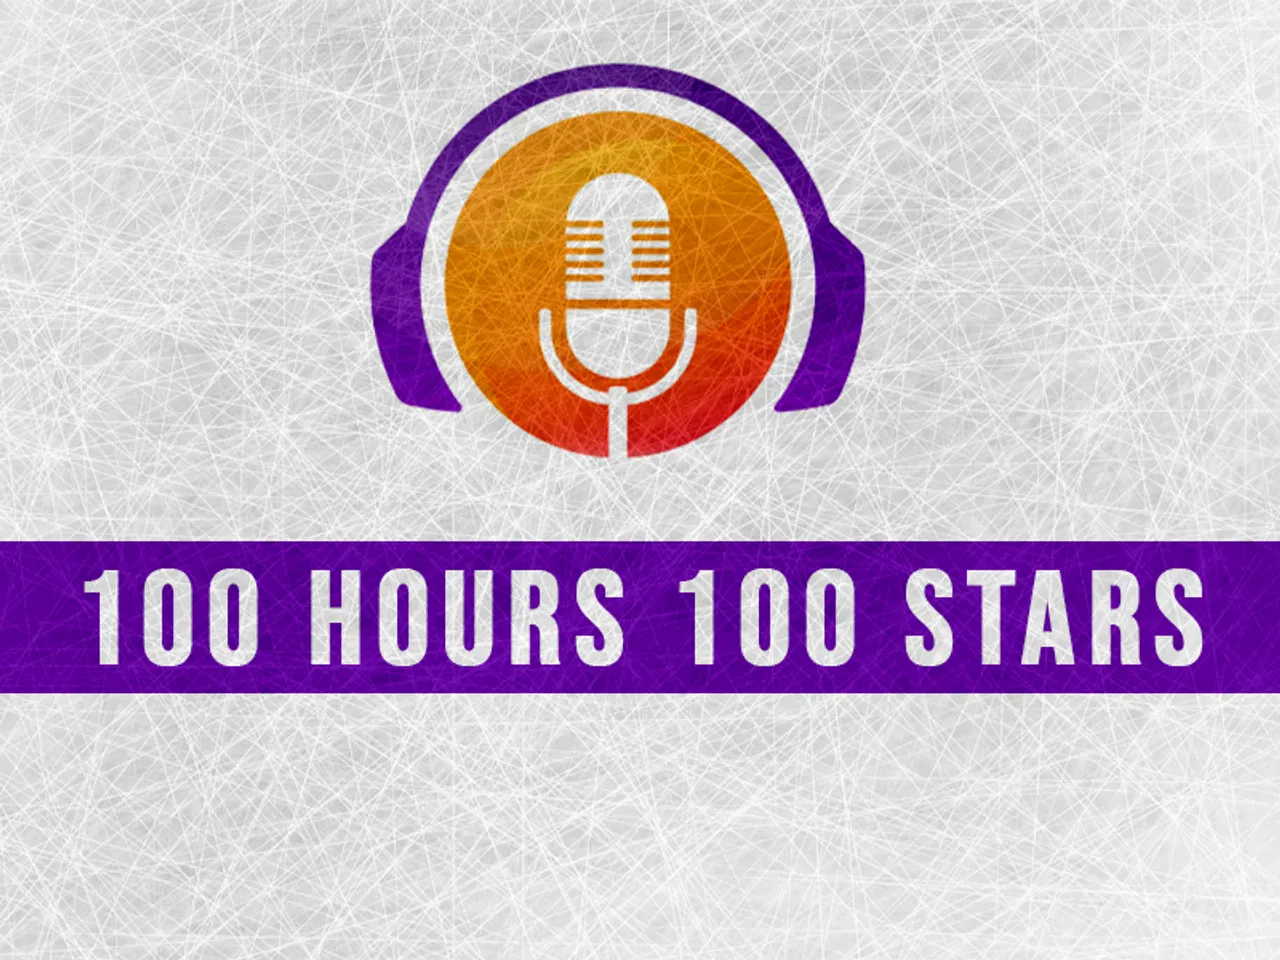 फीवर एफएम की पहल, कोरोना वॉरियर्स के लिए लगातार 100 Hours 100 Stars कार्यक्रम की होगी शुरूआत